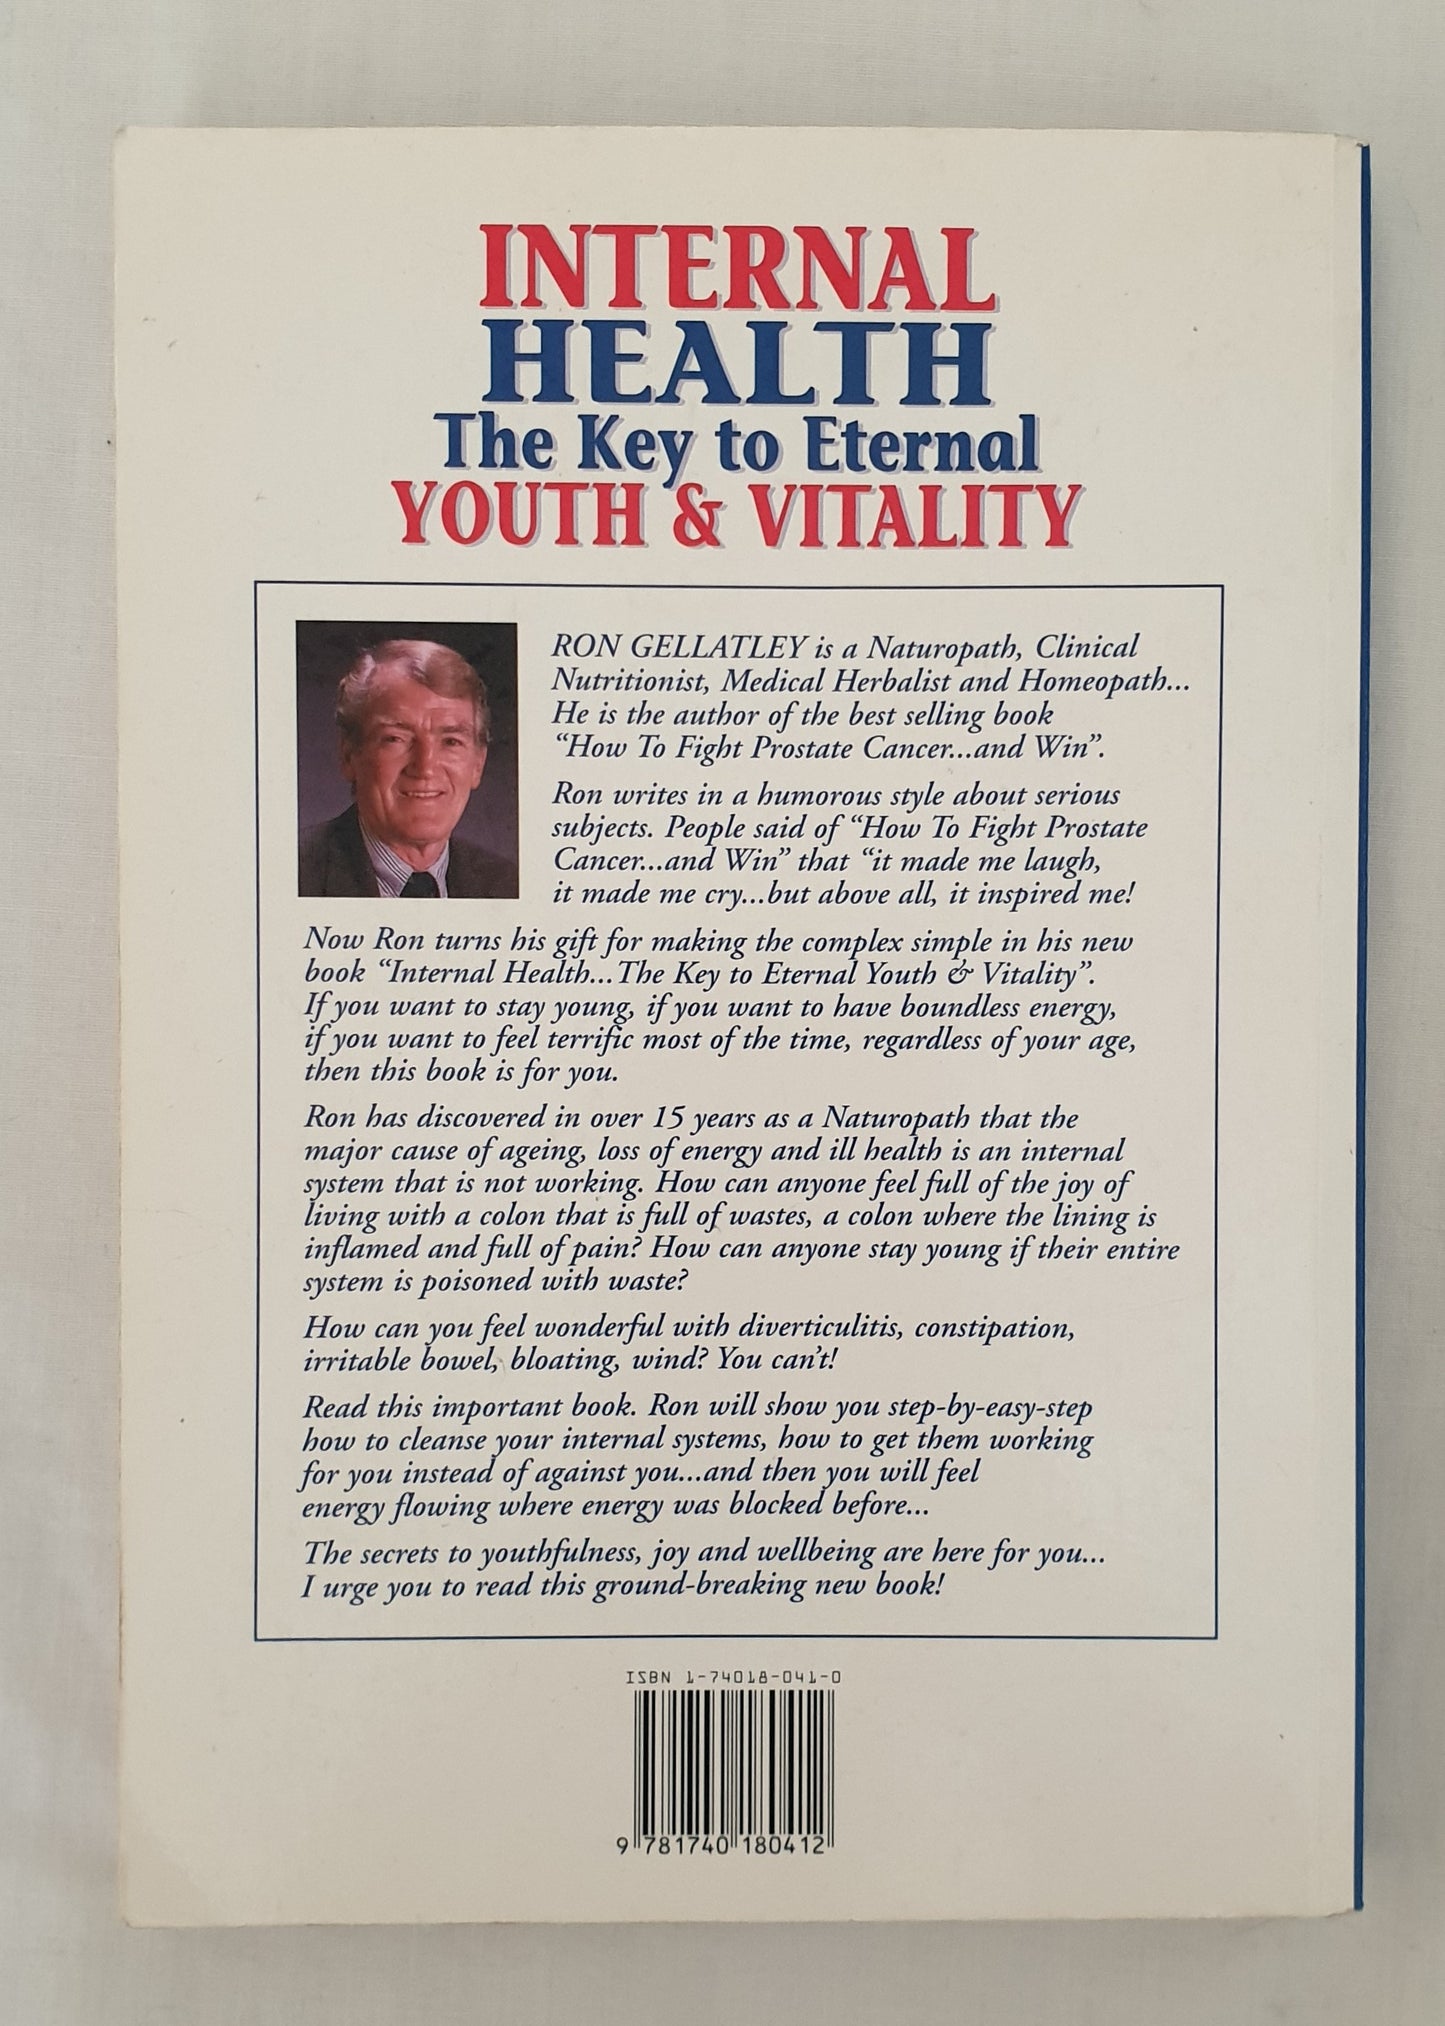 Internal Health by Ron Gellatley